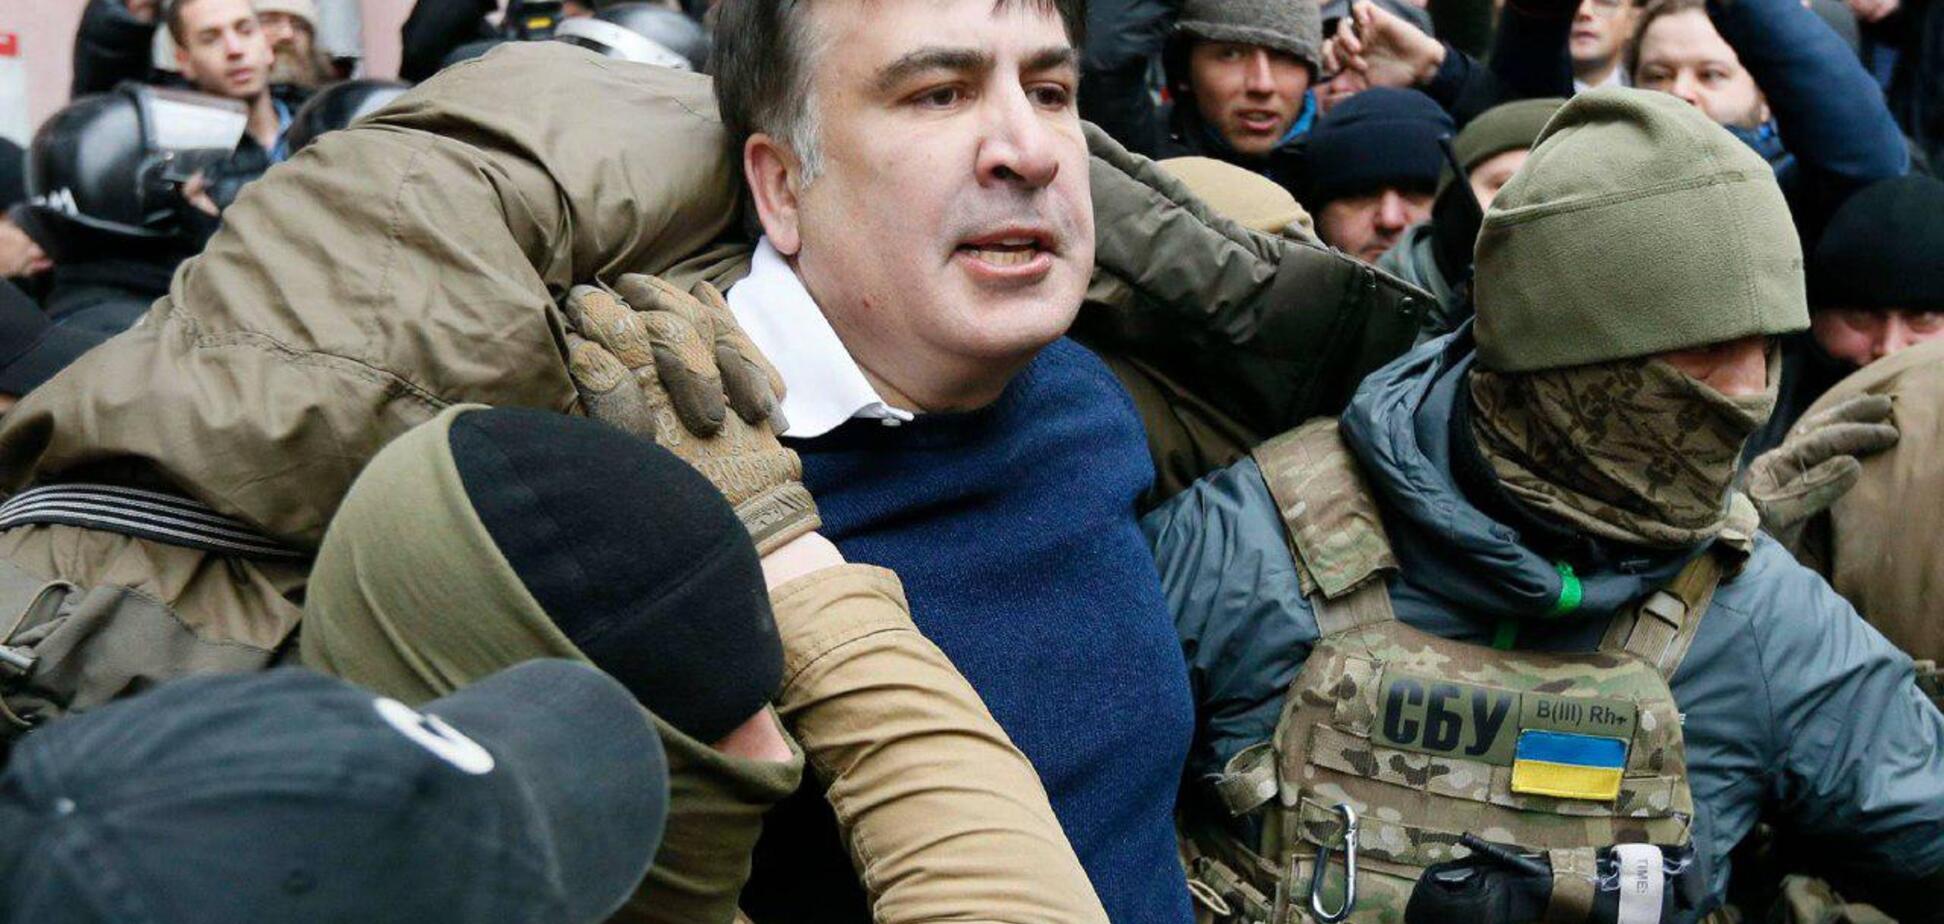 Антикоррупционеры вокруг Саакашвили могли предупредить скандал — советник Atlantic Council